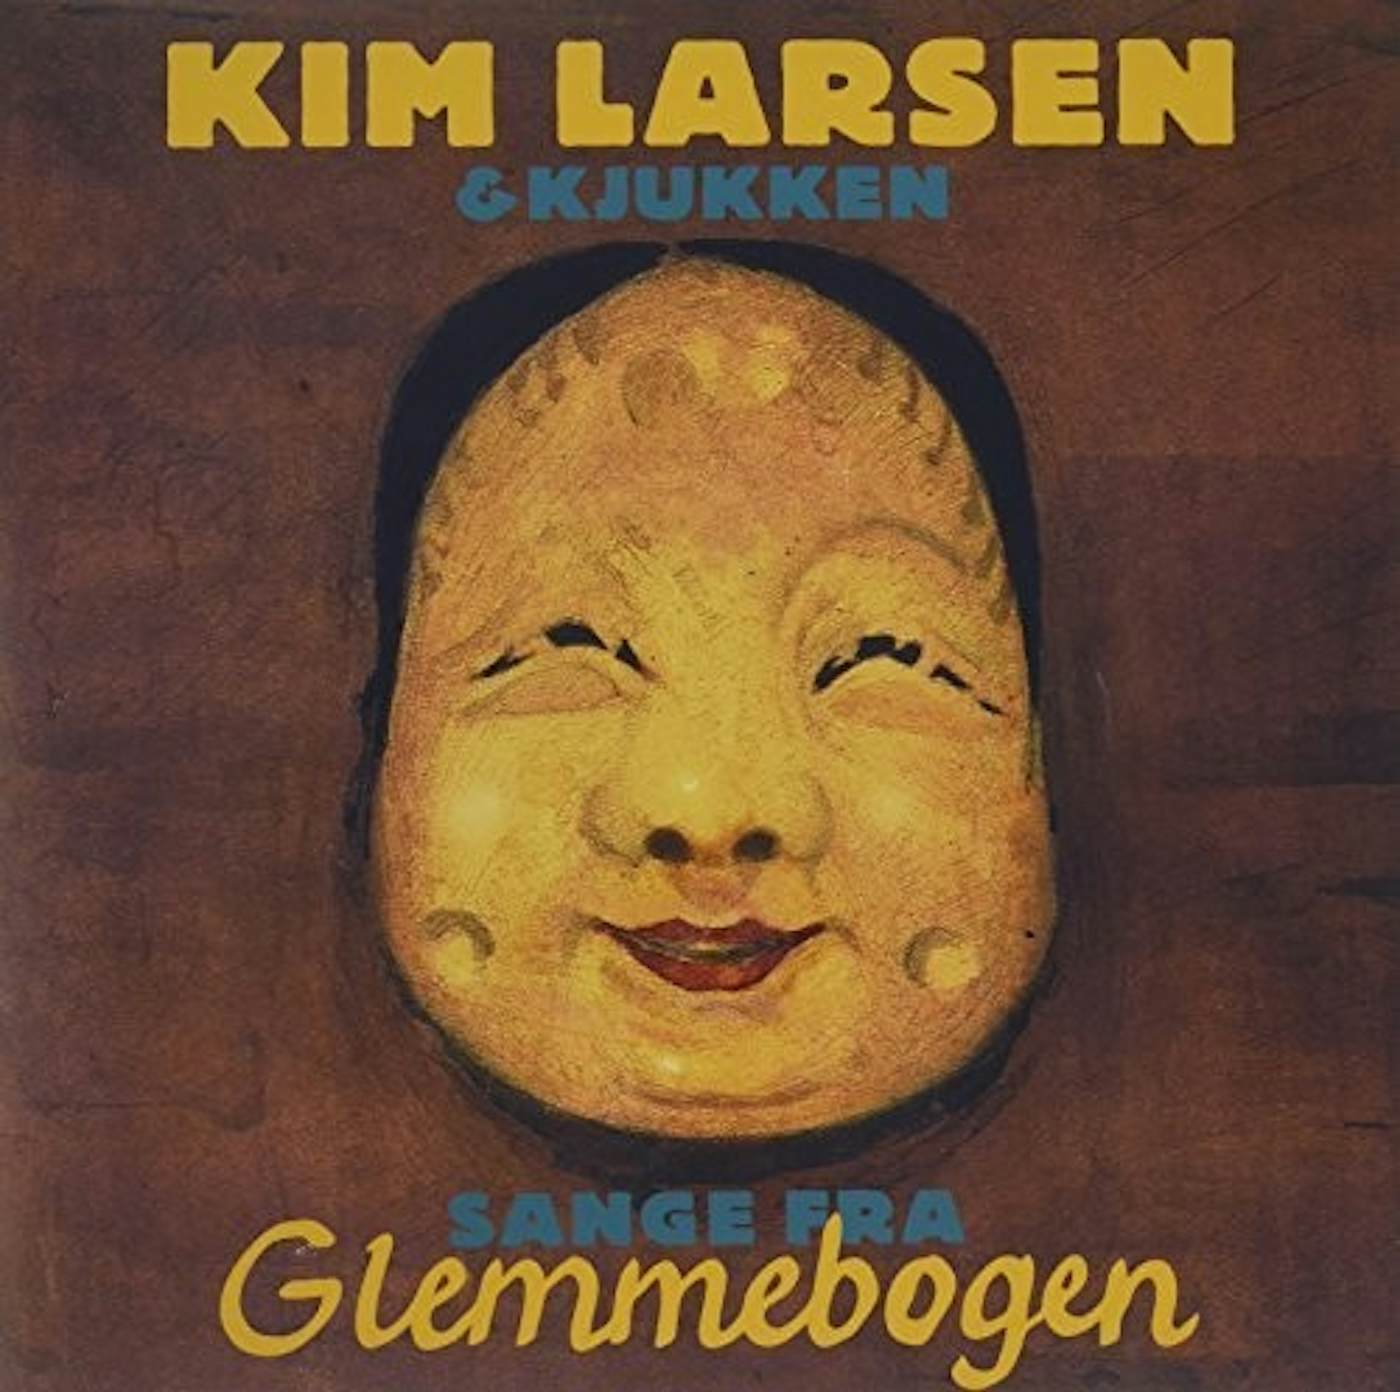 Larsen & Sange Fra Glemmebogen Record